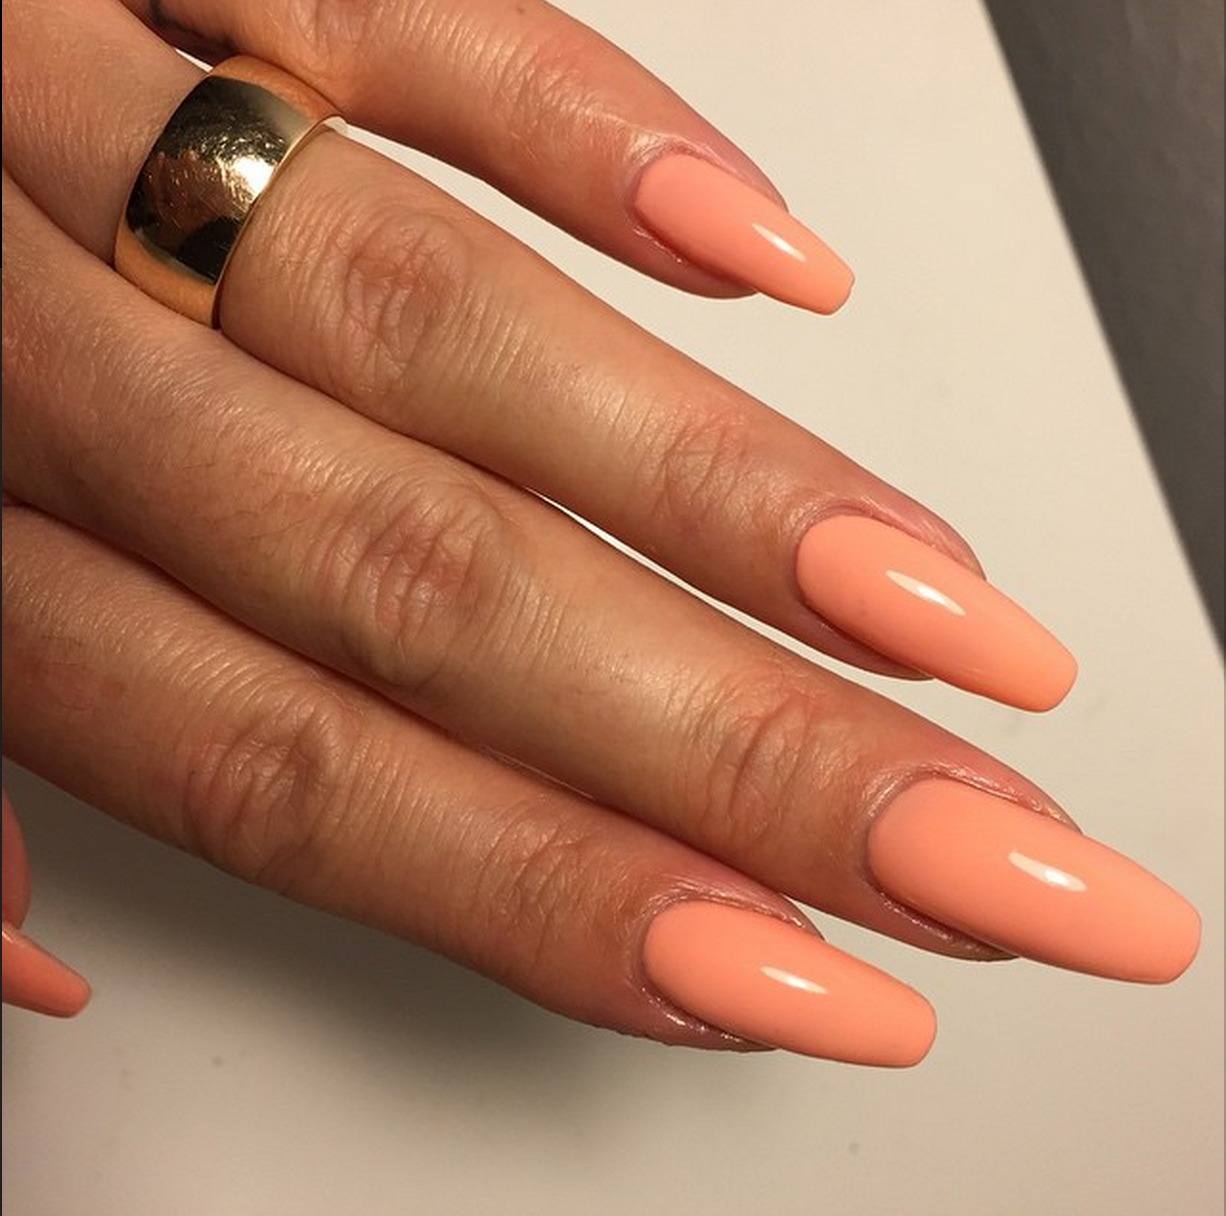 Форма ногтей гель лак. Маникюр персикового цвета. Нарощенные ногти однотонные. Персиковый маникюр на длинные ногти. Однотонное наращивание ногтей.